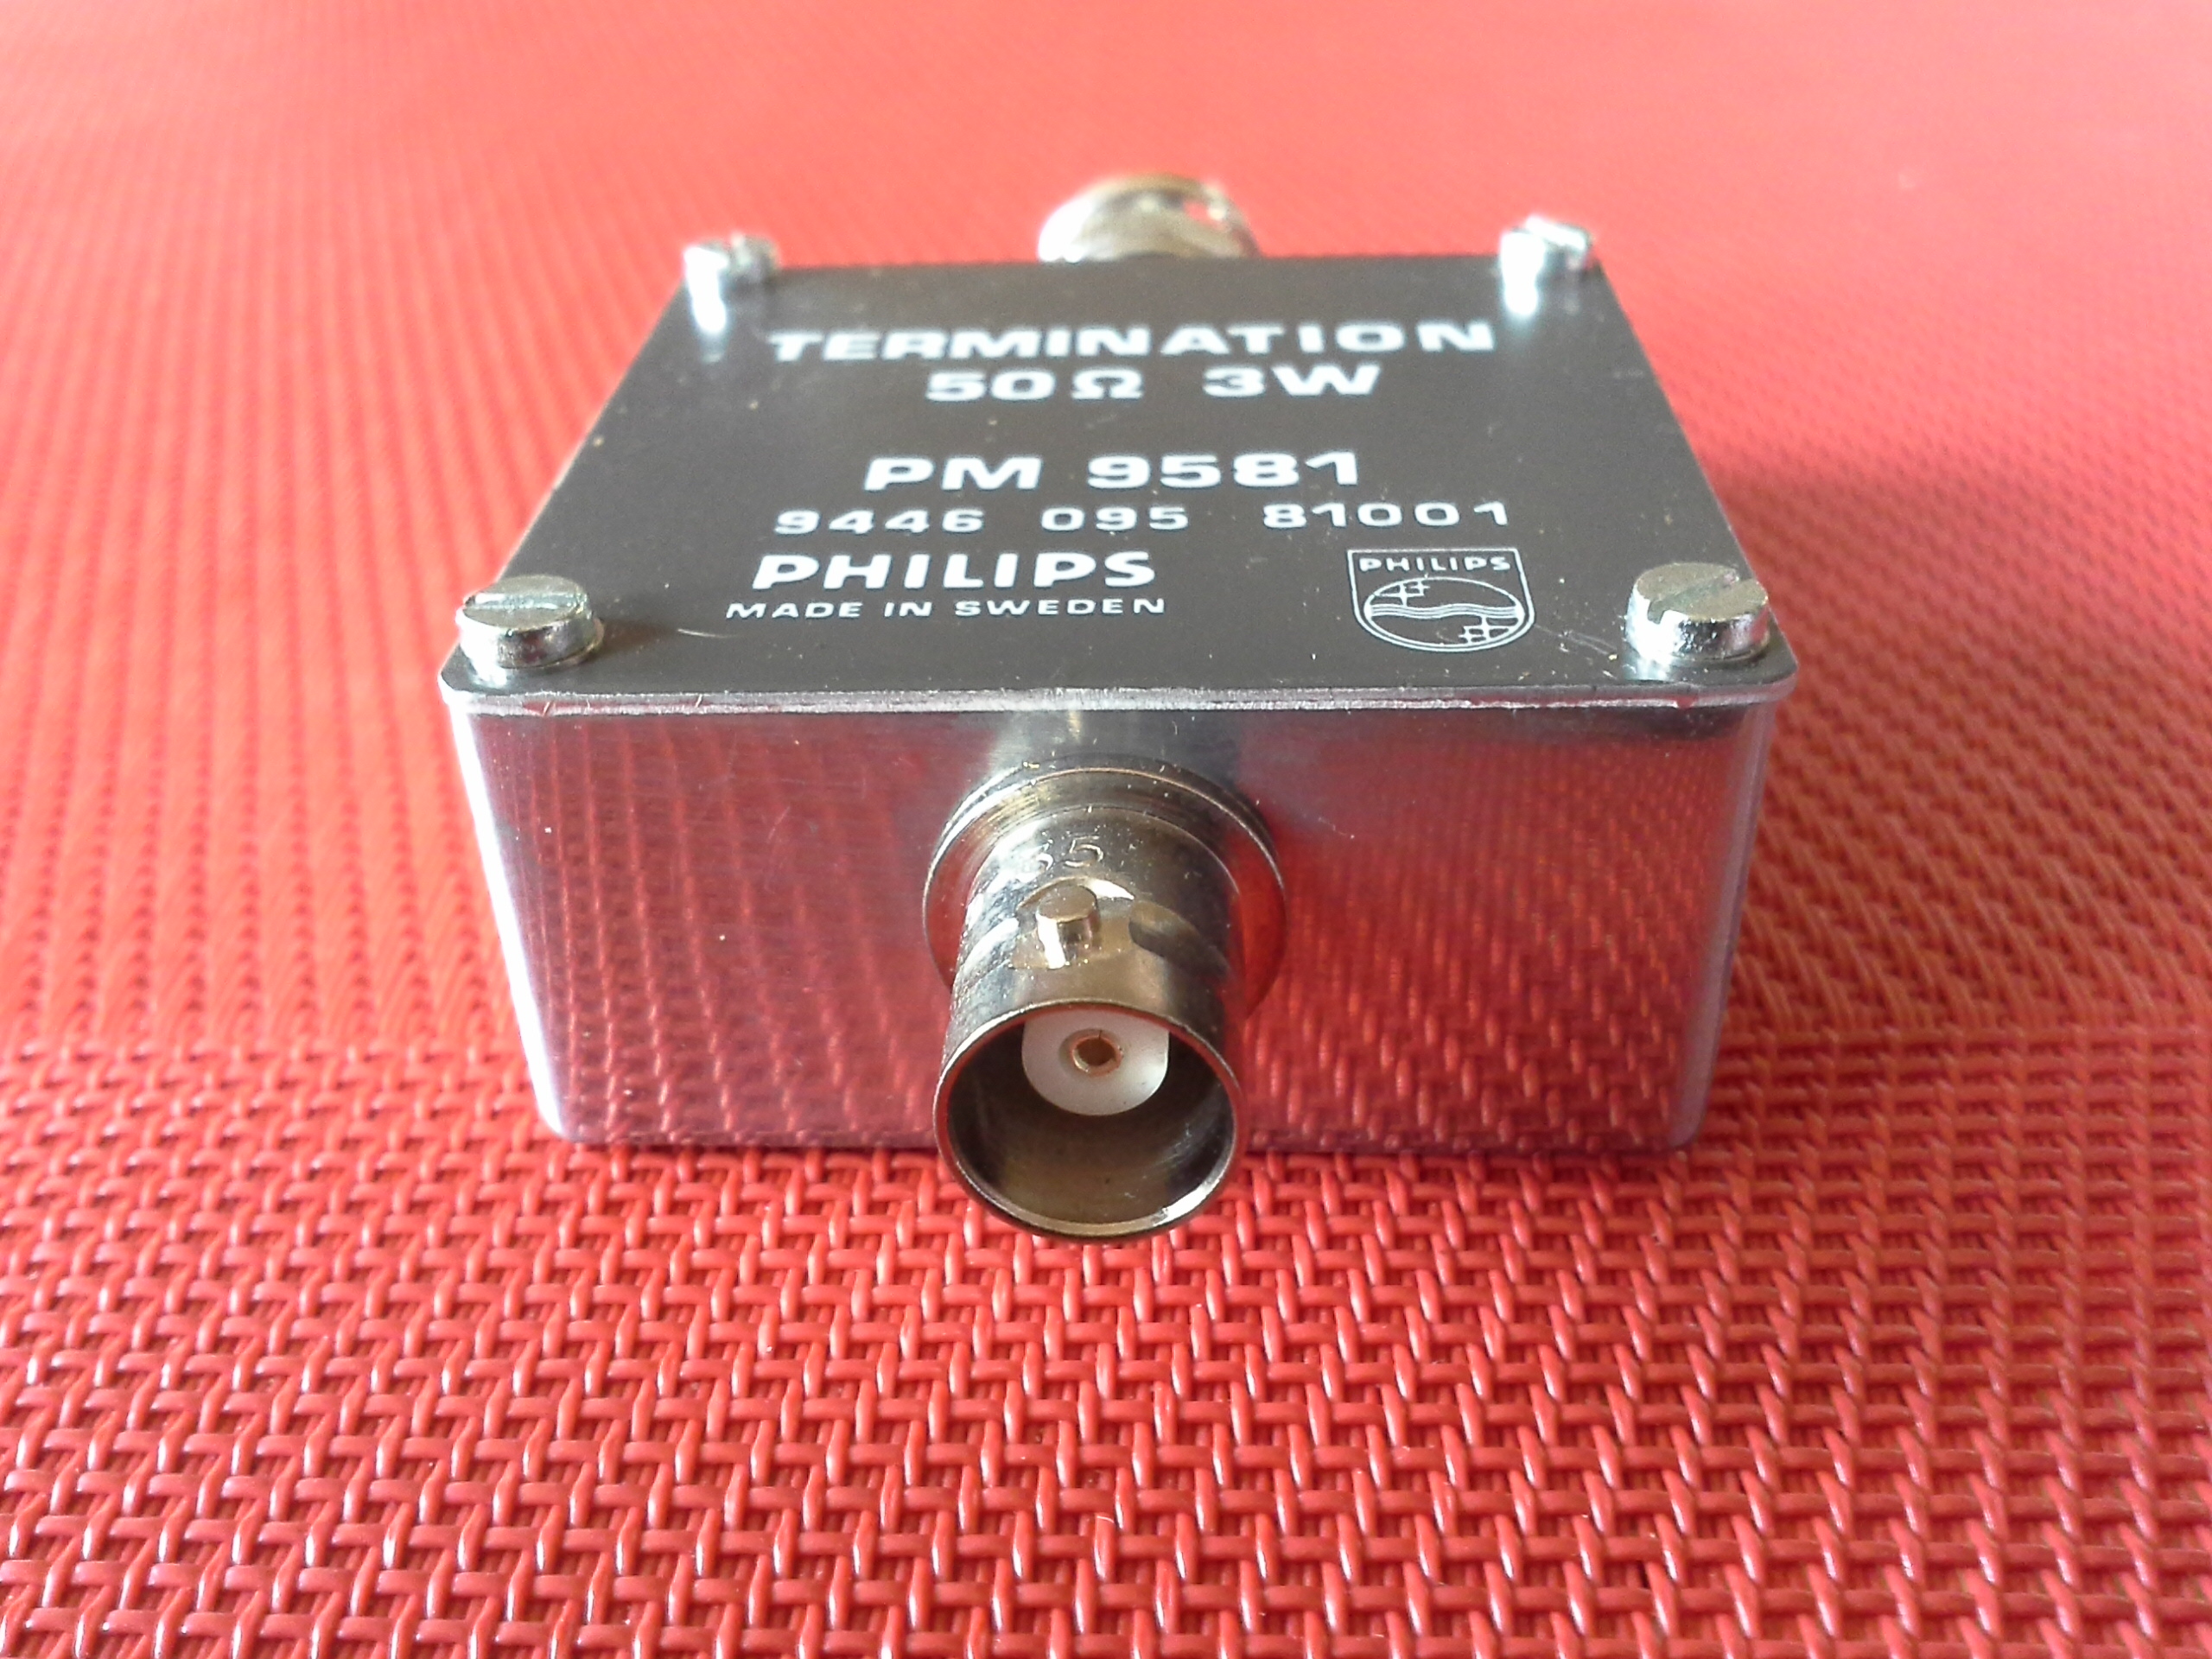 Philips PM 9581 Termination / Durchgangsabschluss